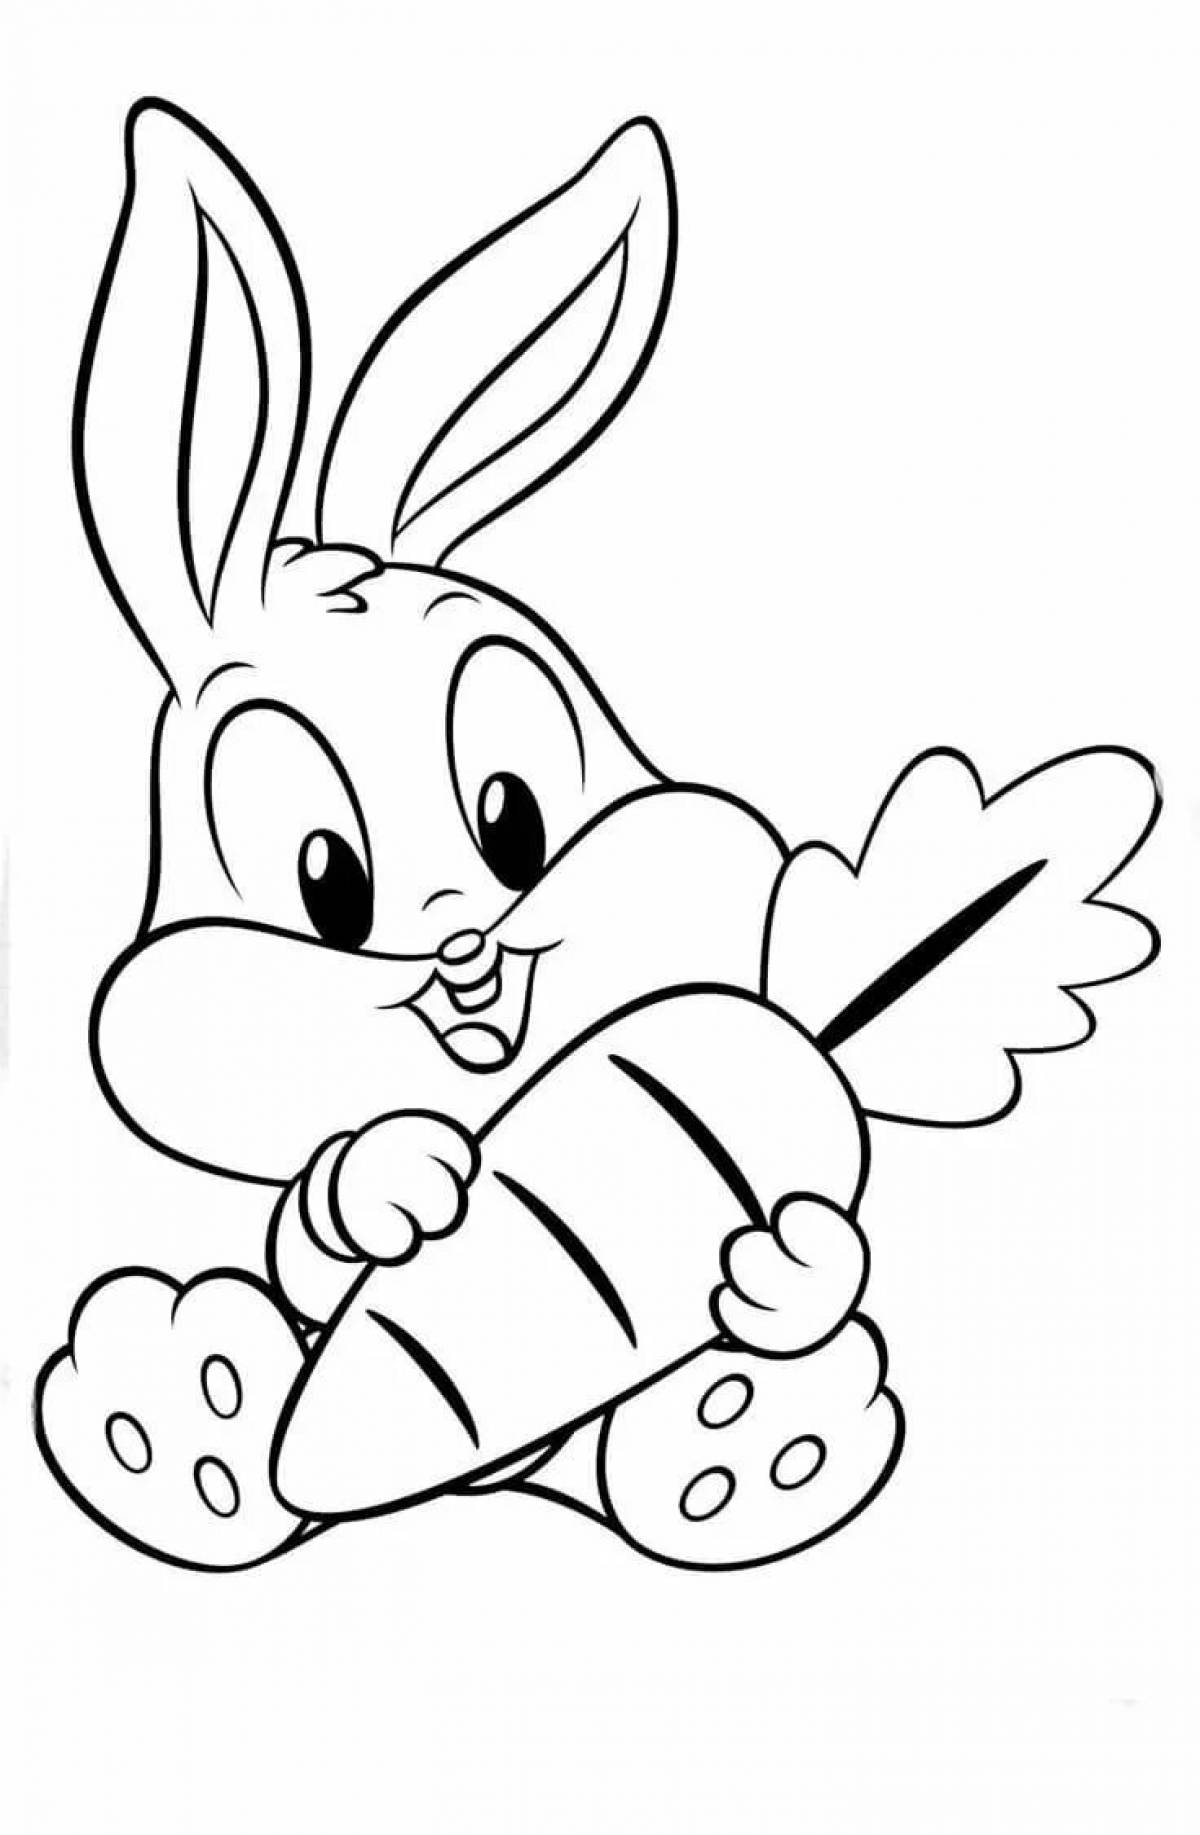 Coloring book big-tailed cartoon rabbit